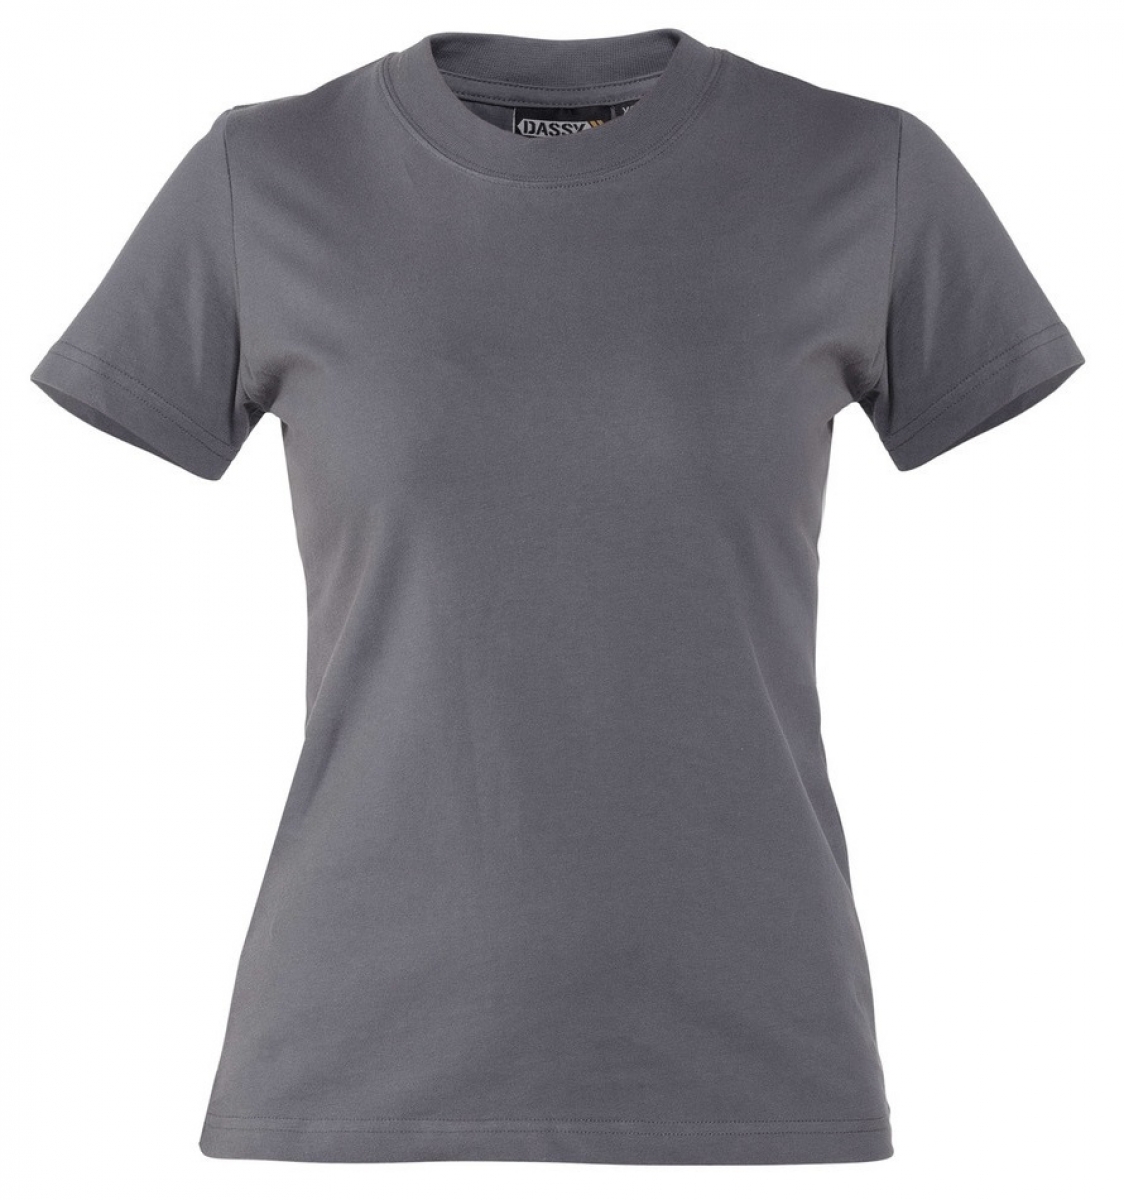 DASSY-Worker-Shirts, T-Shirt Woman "OSCAR" , grau